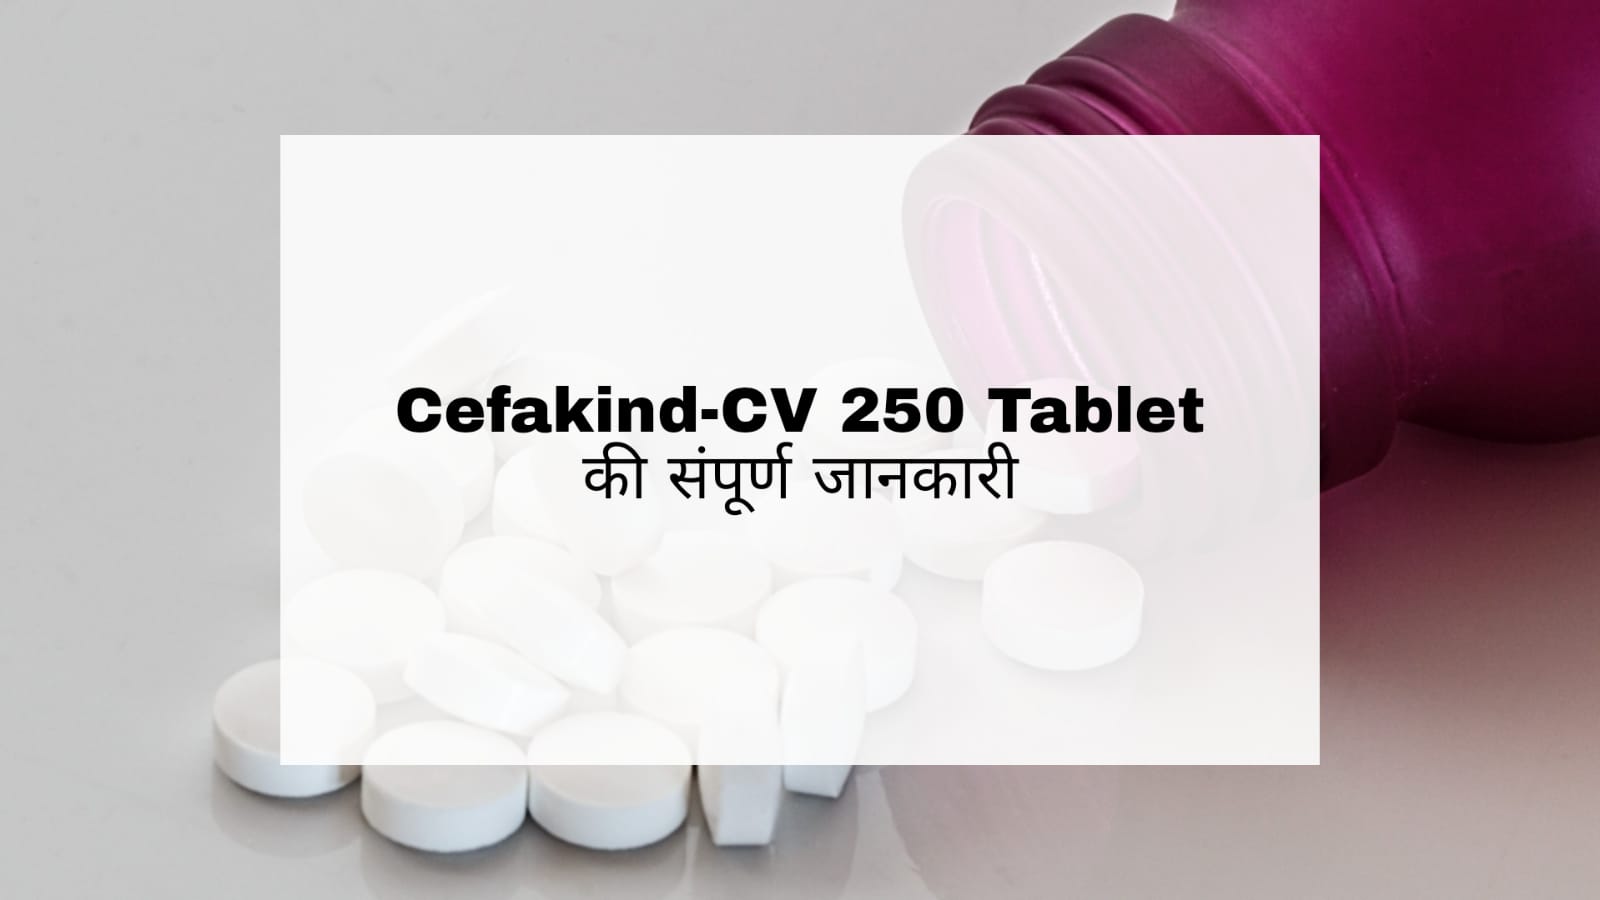 Cefakind-CV 250 Tablet Hindi